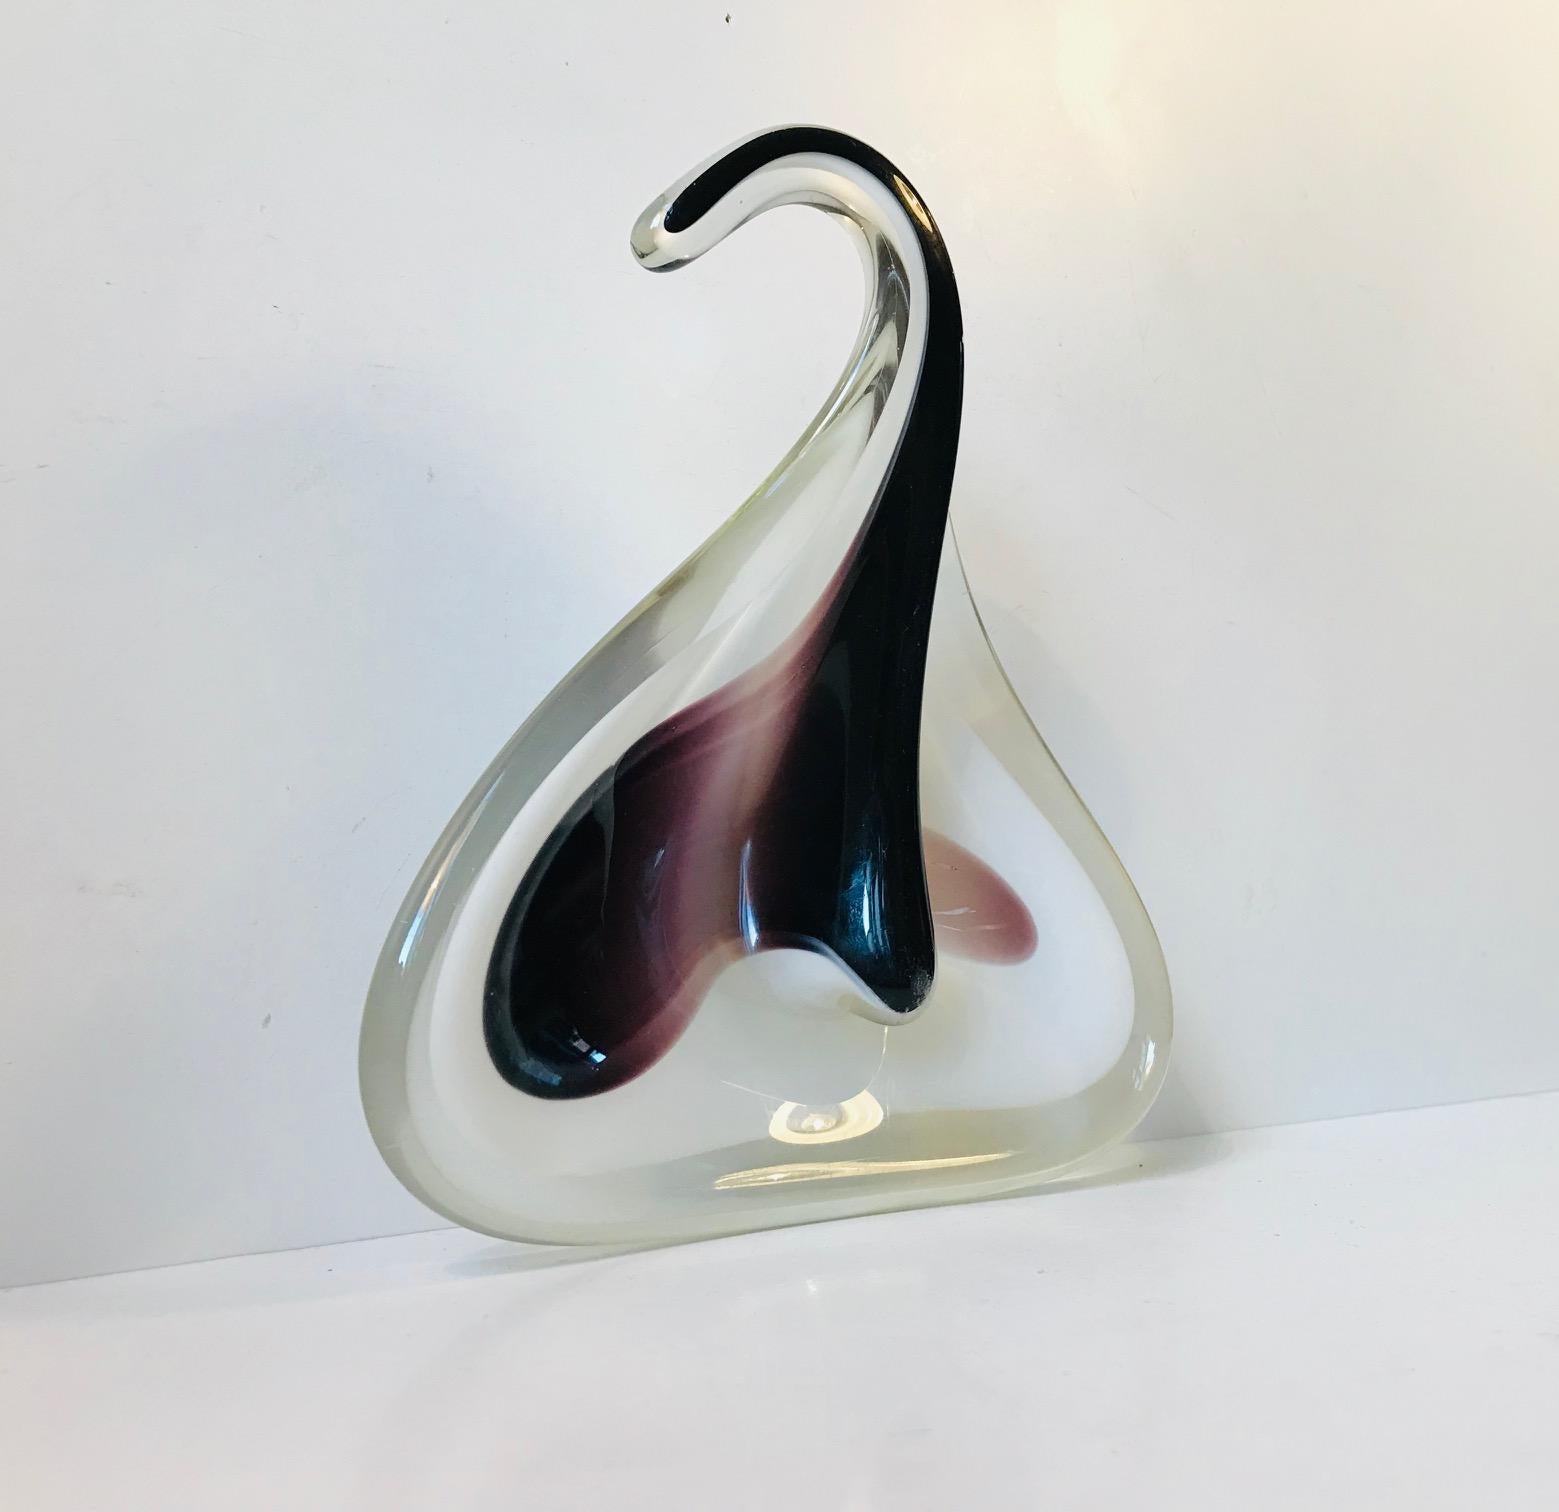 - Kunstglasschale in Form eines Mantarochens
- 1955 vom Glasmacher Paul Kedelv entworfen 
- Hergestellt von Flygfors in Schweden
- Die Schale ist auf dem Sockel mit Kedelv signiert und mit Flygfors 55 bezeichnet.